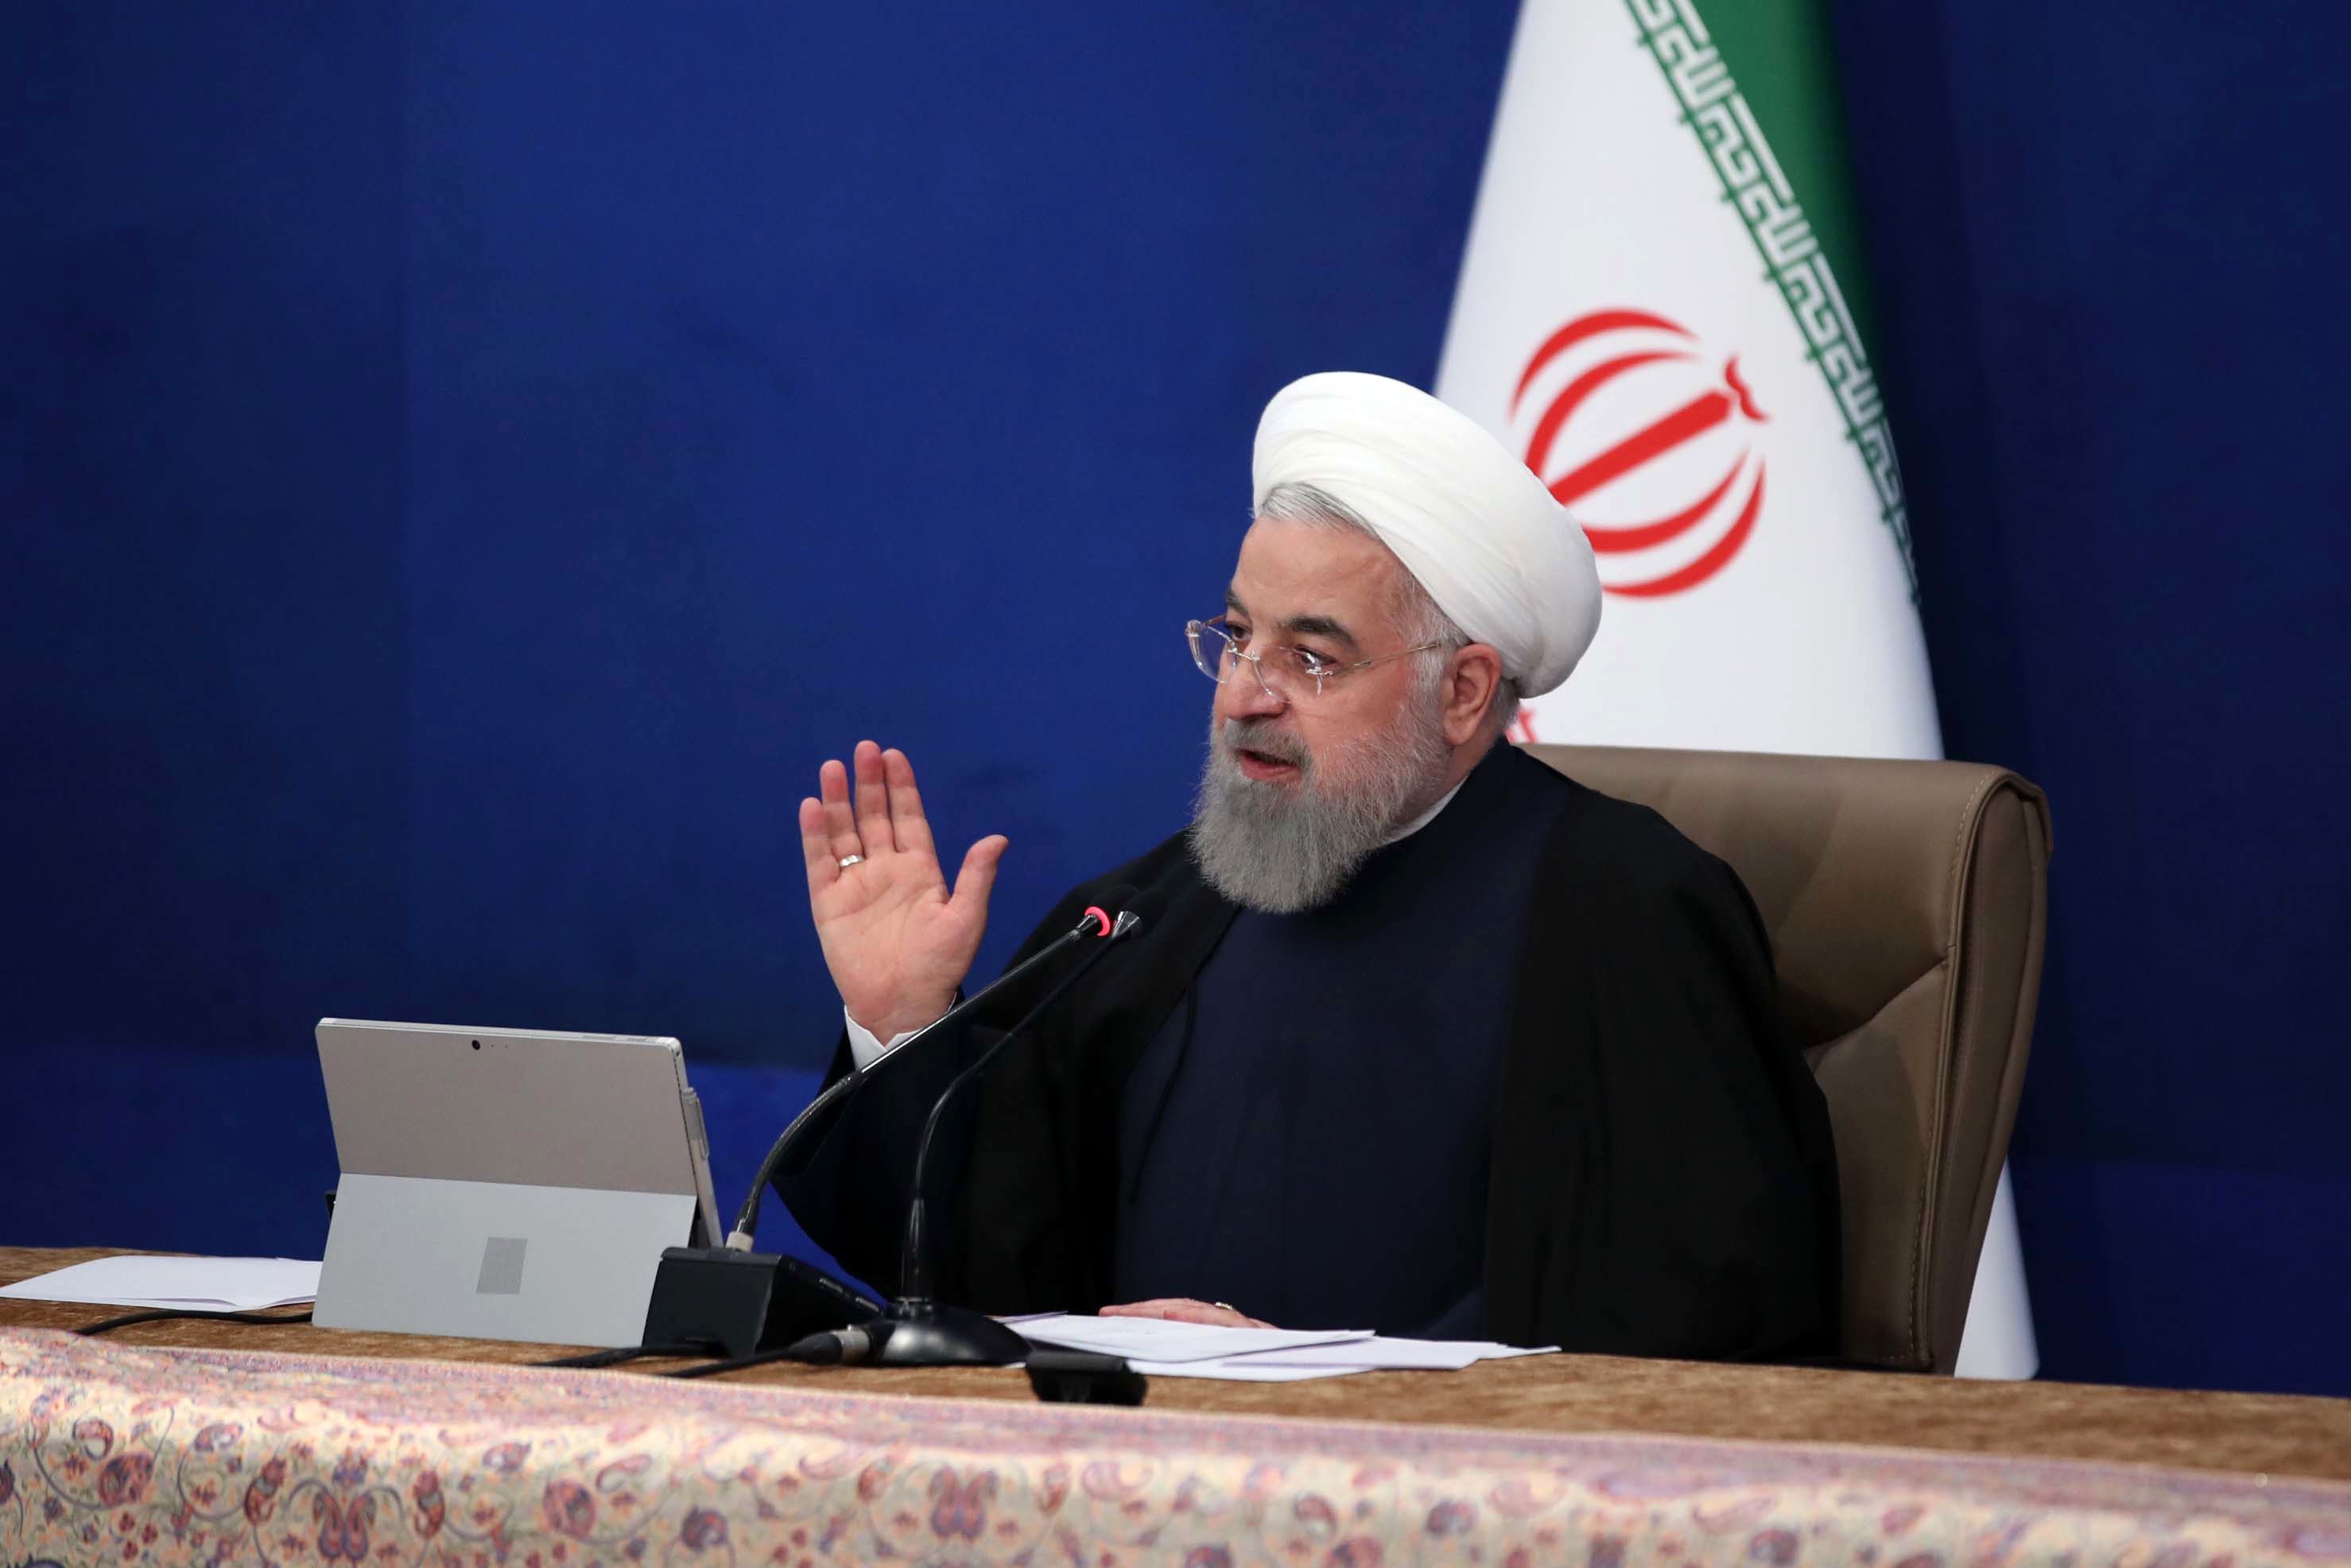  واکنش روحانی به بازجویی از وزیر ارتباطات: باید من را احضار کنید